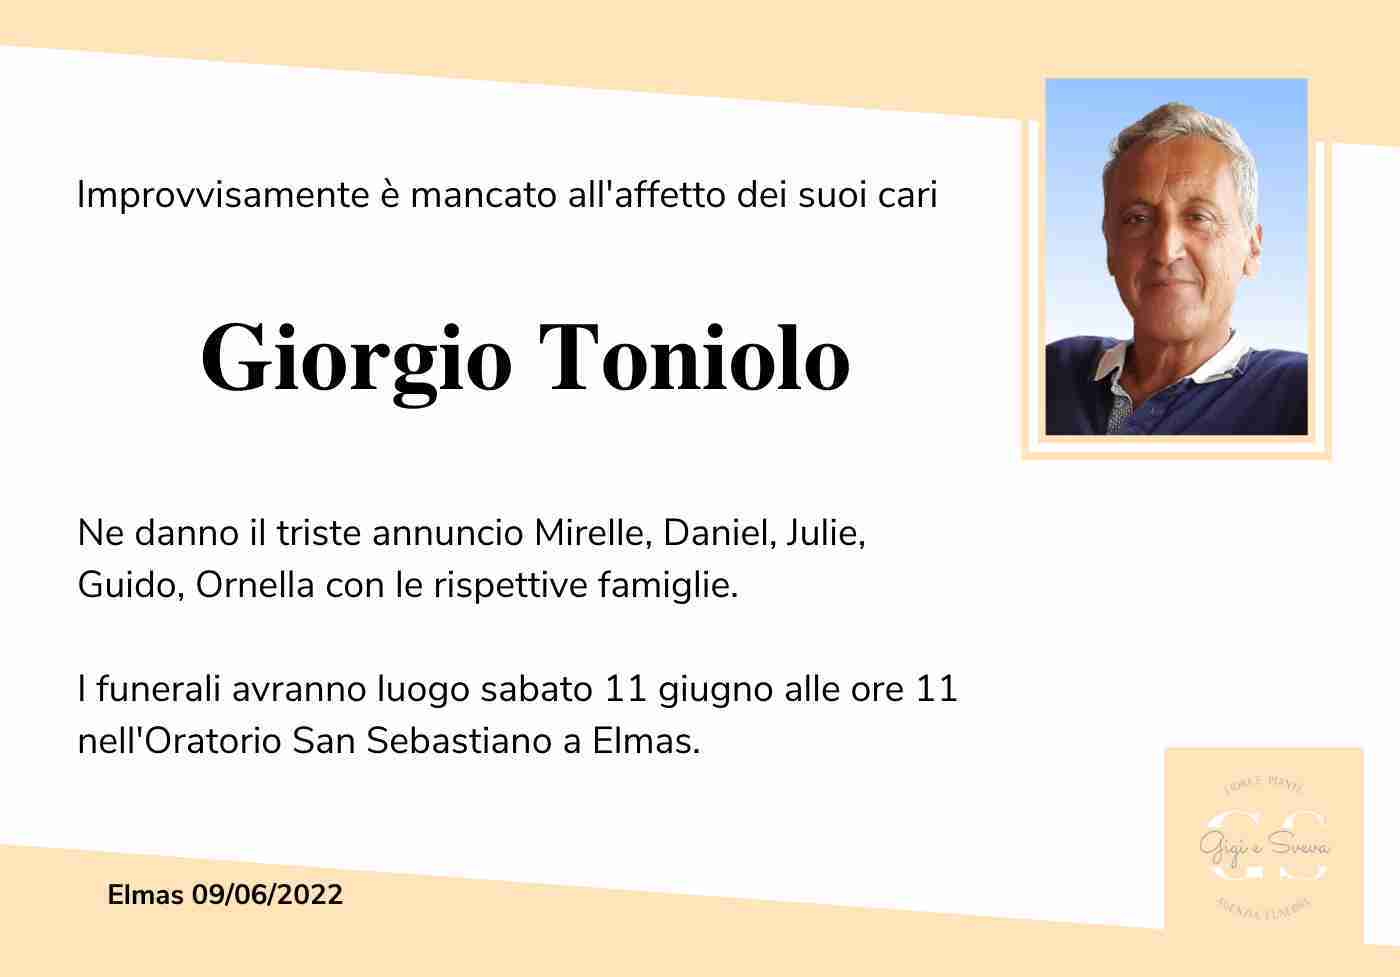 Giorgio Toniolo